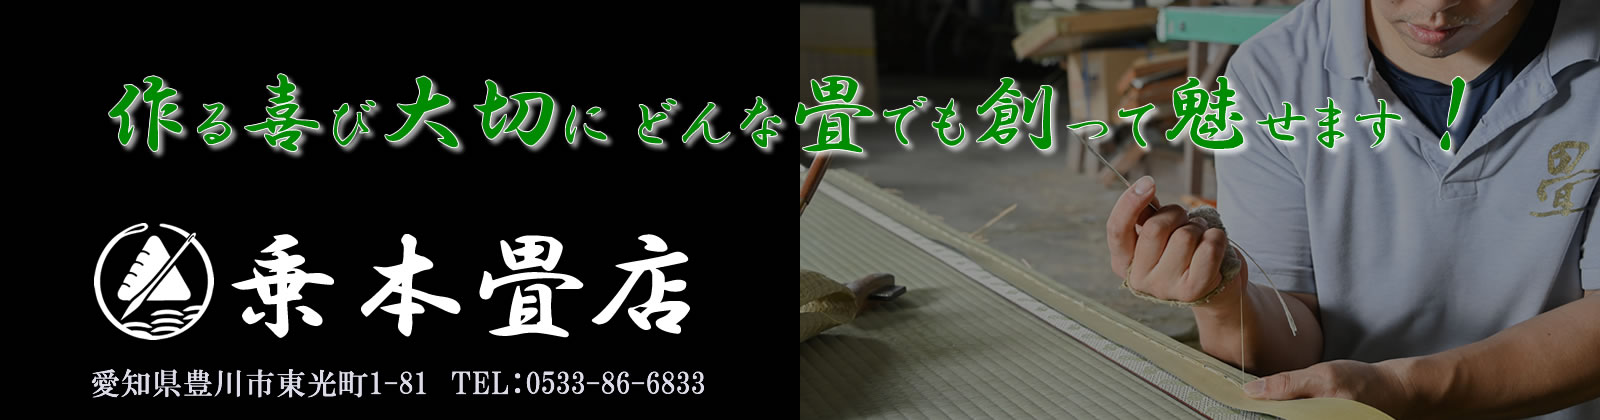 二畳台制作の様子 | 乗本畳店 | 愛知県豊川市の畳屋